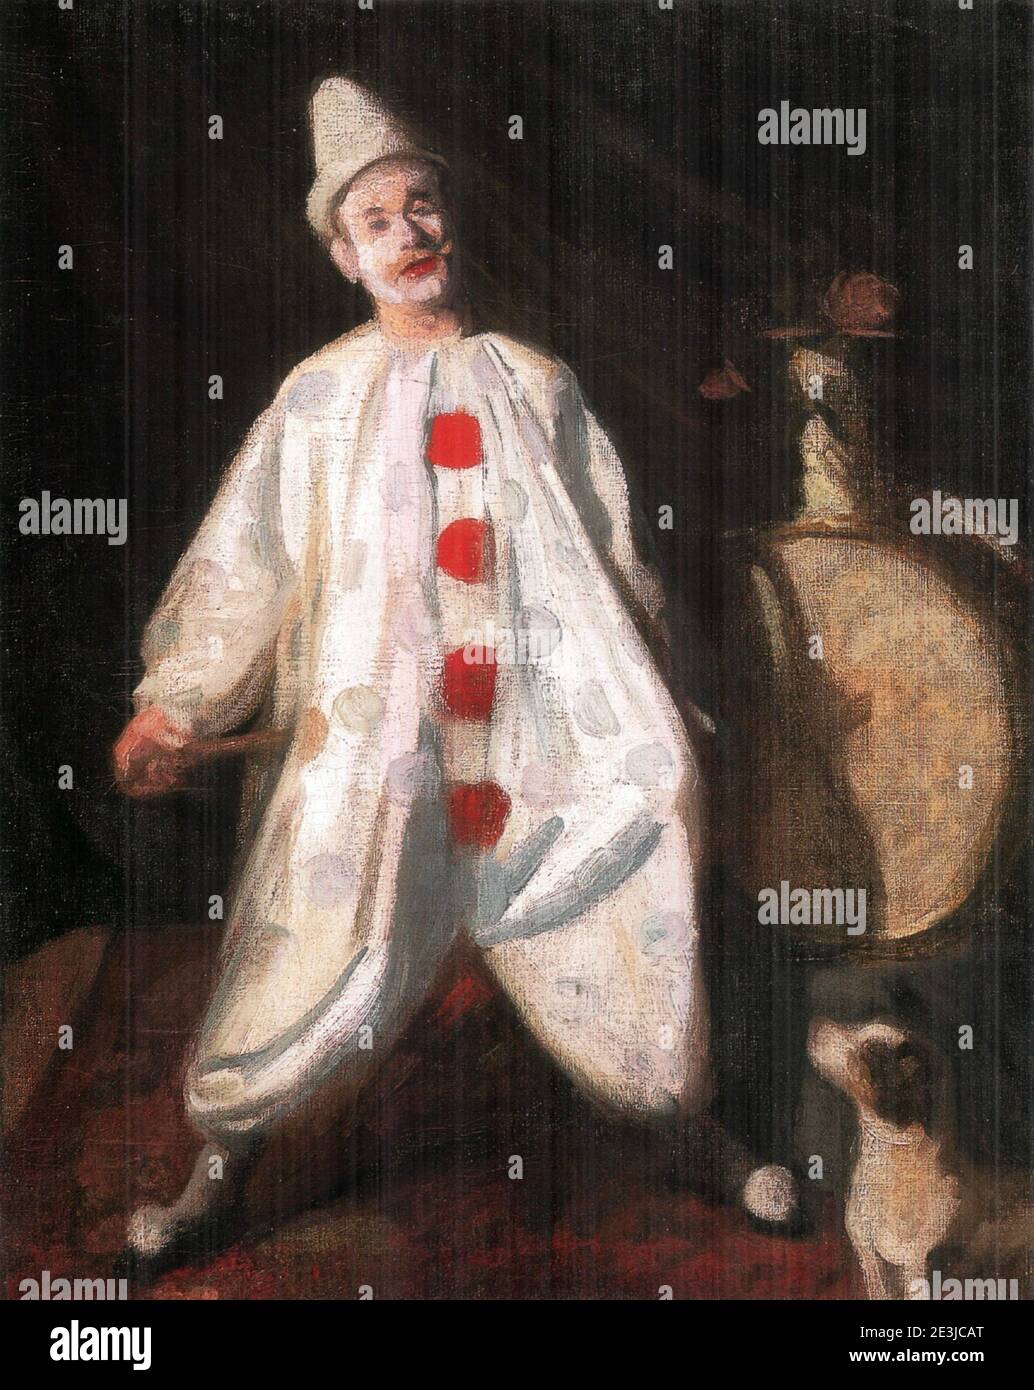 Oeuvre intitulée Clown par l'artiste hongrois Károly Ferenczy. Le clown porte sa tenue blanche avec de grands boutons rouges proéminents. Banque D'Images